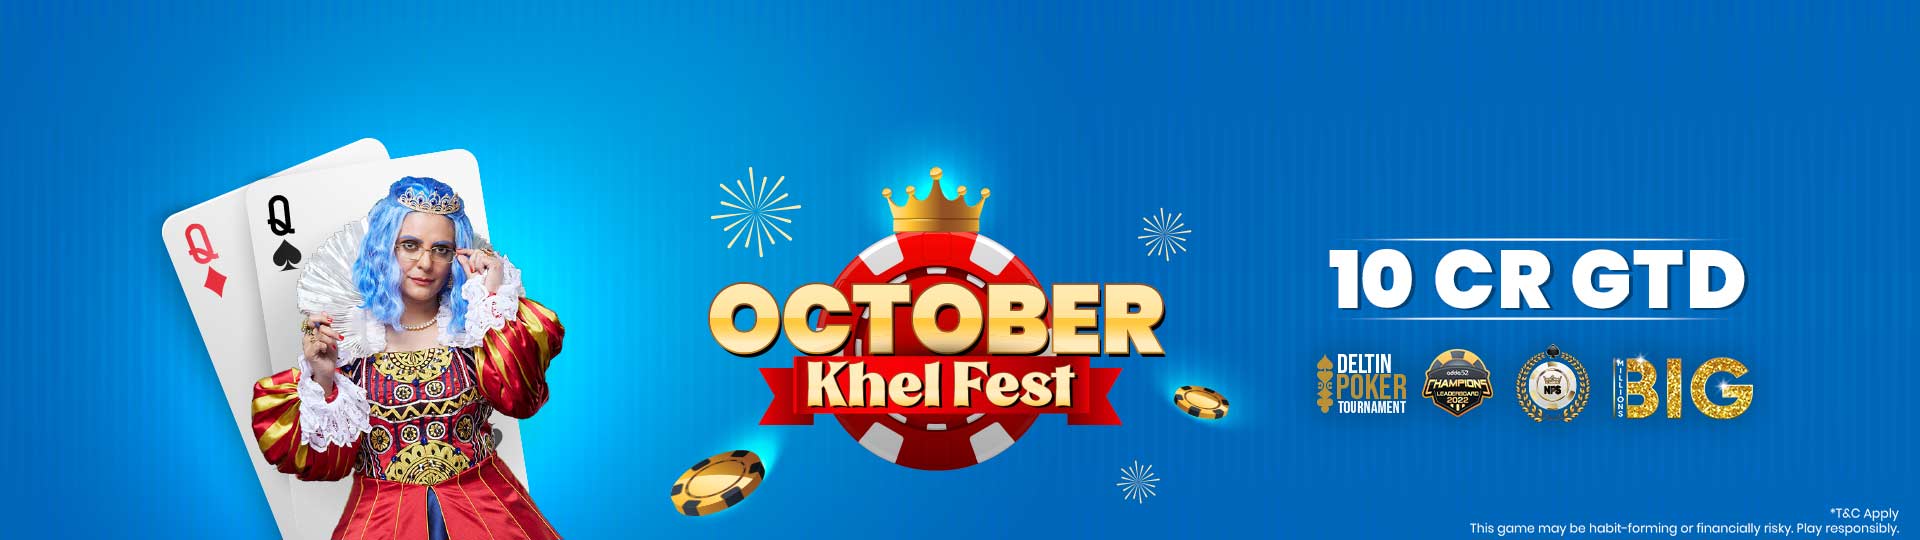 October Khel Fest